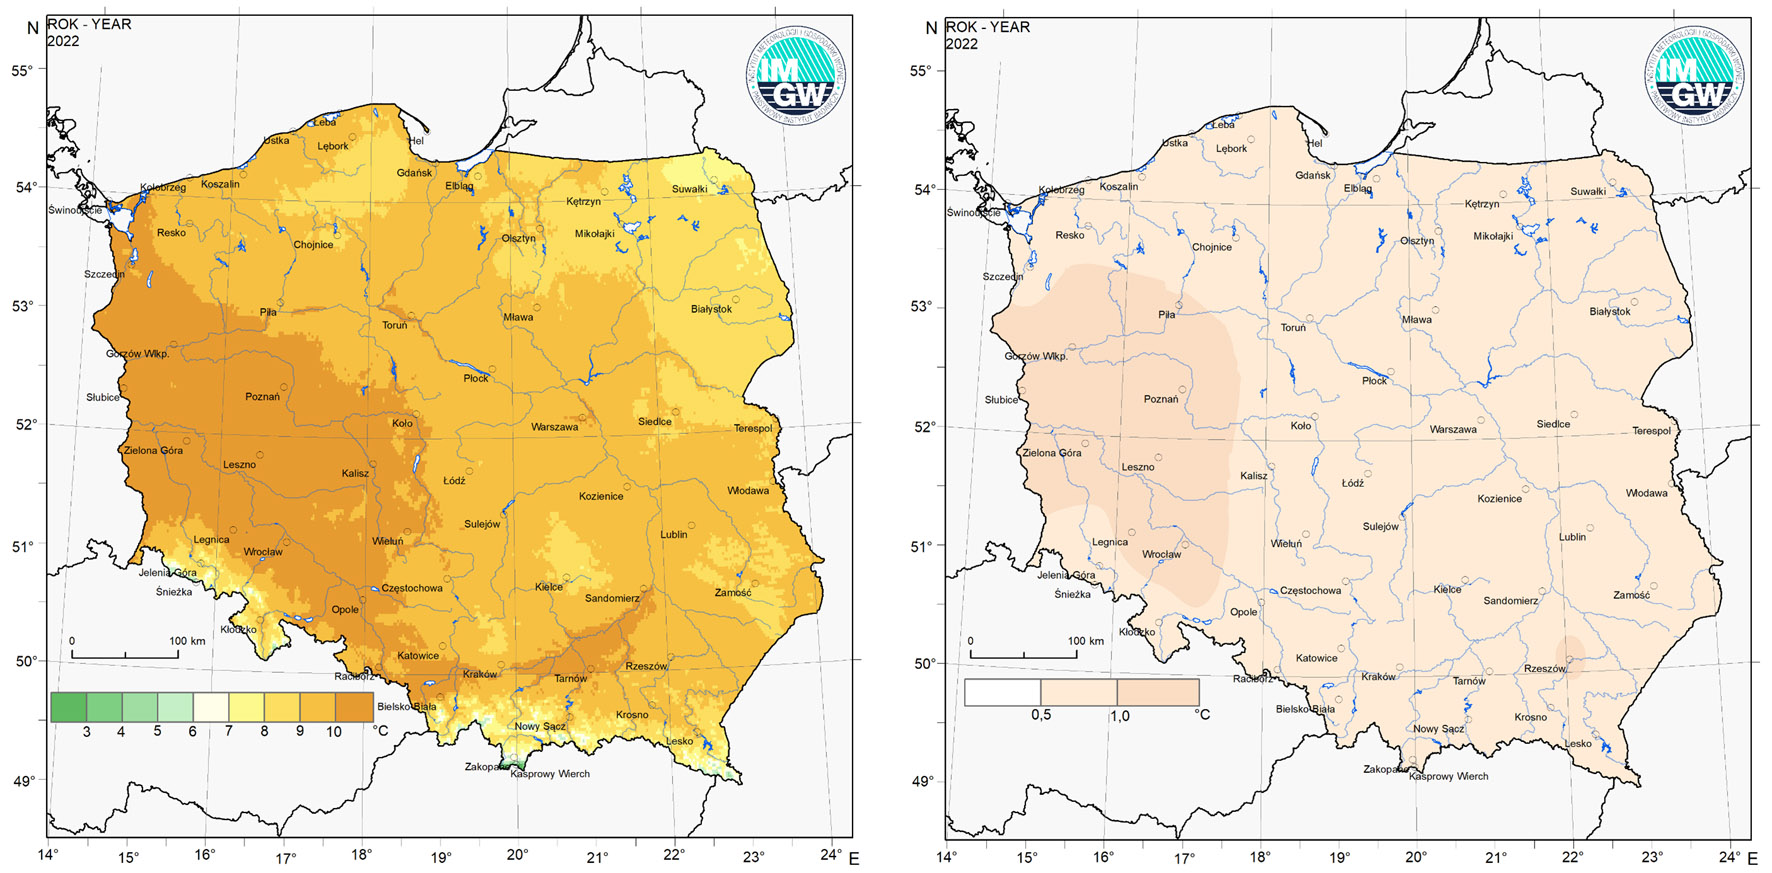 Przestrzenny rozkład temperatury powietrza (po lewej) i przestrzenny rozkład anomalii średniej temperatury (po prawej) w 2022 roku.